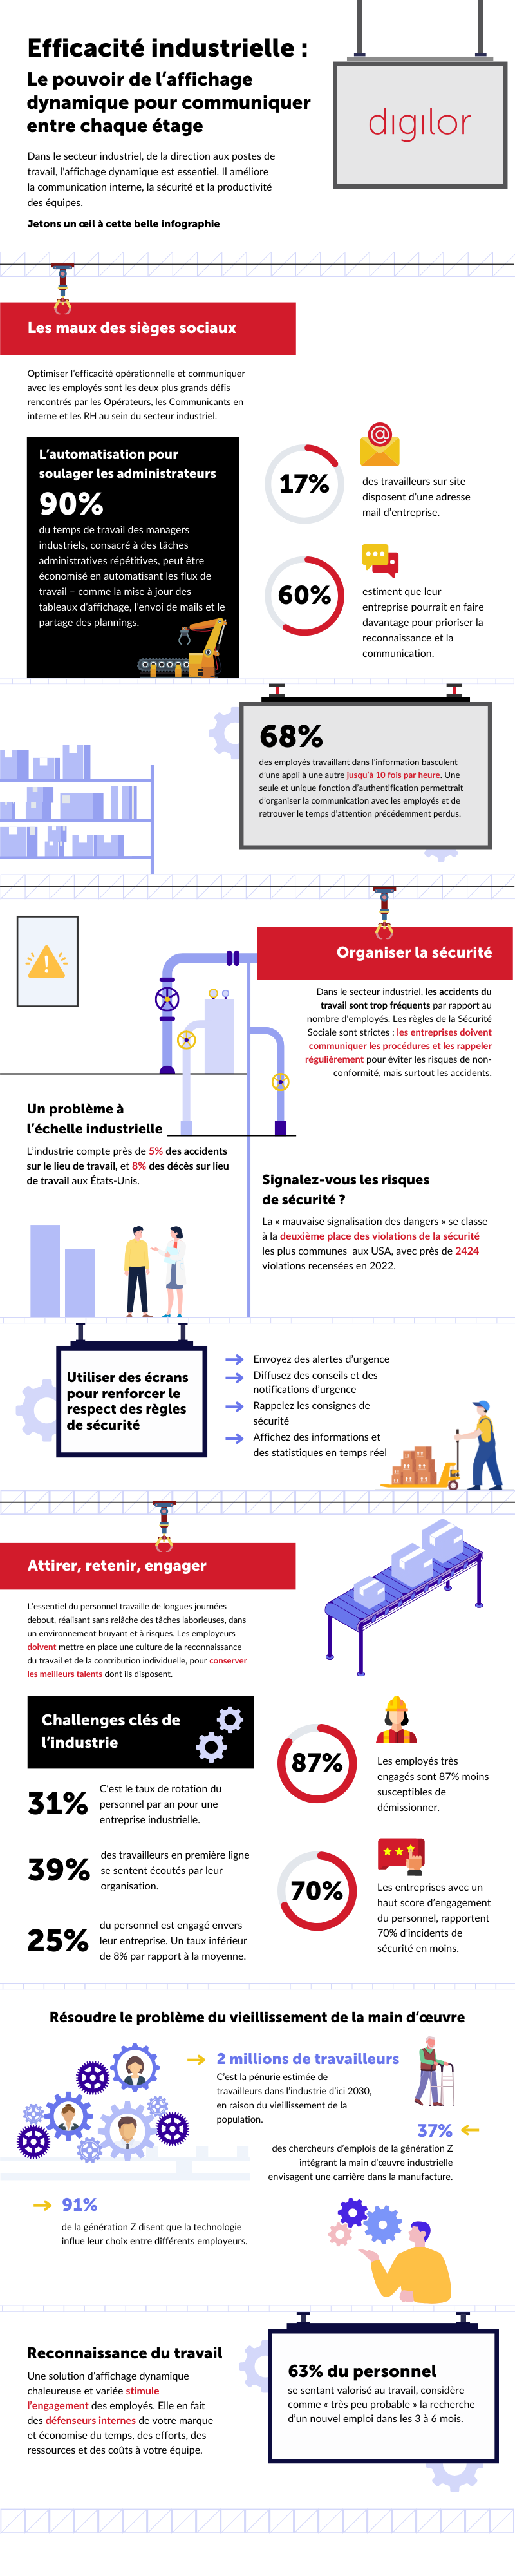 Infographie récapitulative de l'affichage dynamique dans le secteur industriel